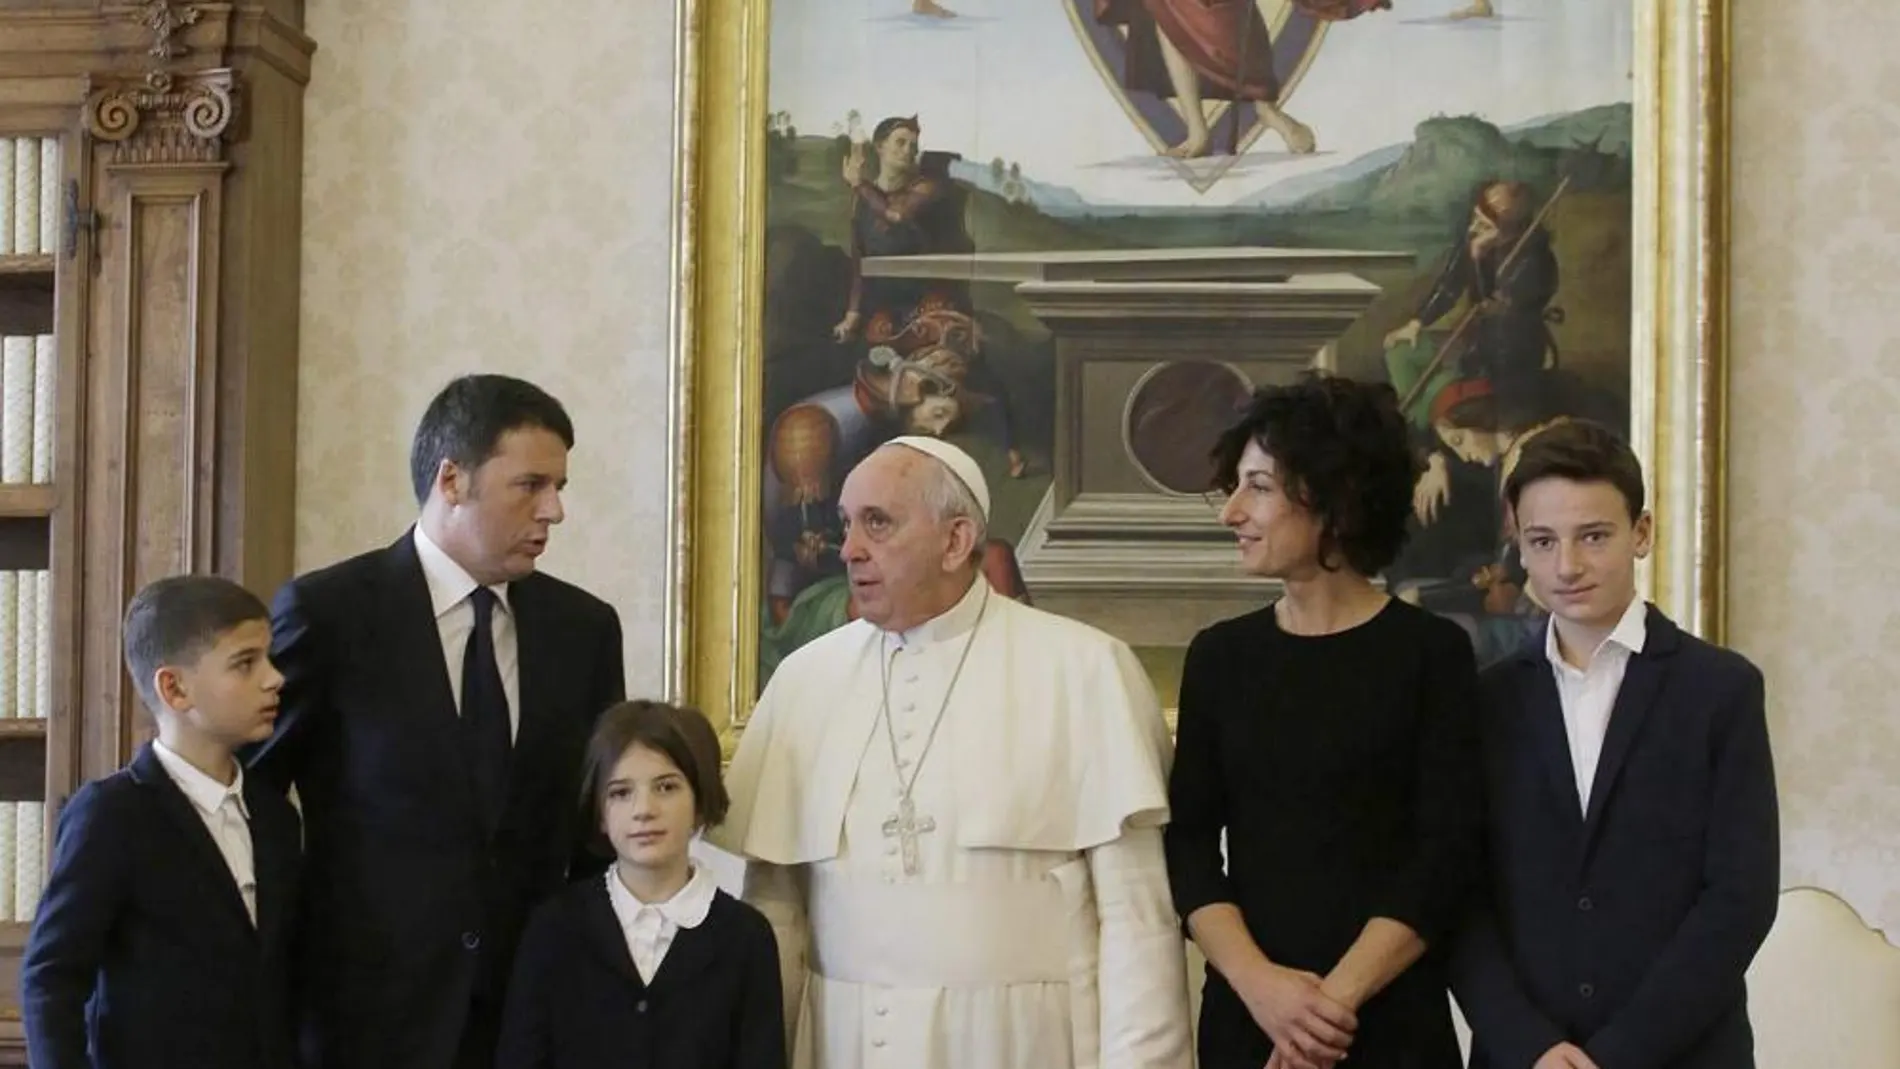 El Papa posa junto a Matteo Renzi y su familia en el Vaticano.